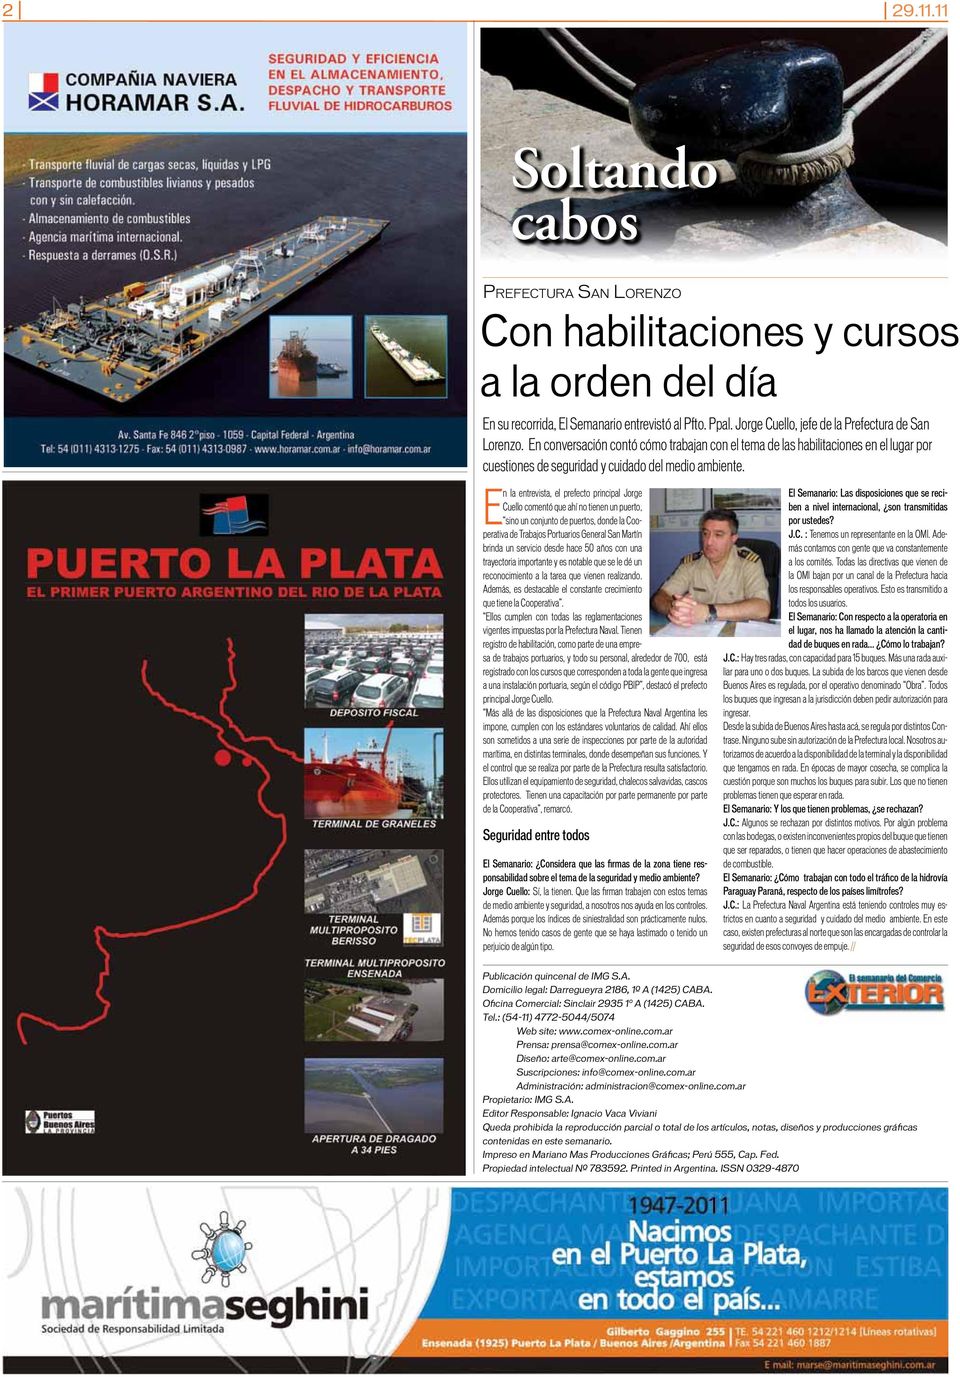 E n la entrevista, el prefecto principal Jorge Cuello comentó que ahí no tienen un puerto, sino un conjunto de puertos, donde la Cooperativa de Trabajos Portuarios General San Martín brinda un